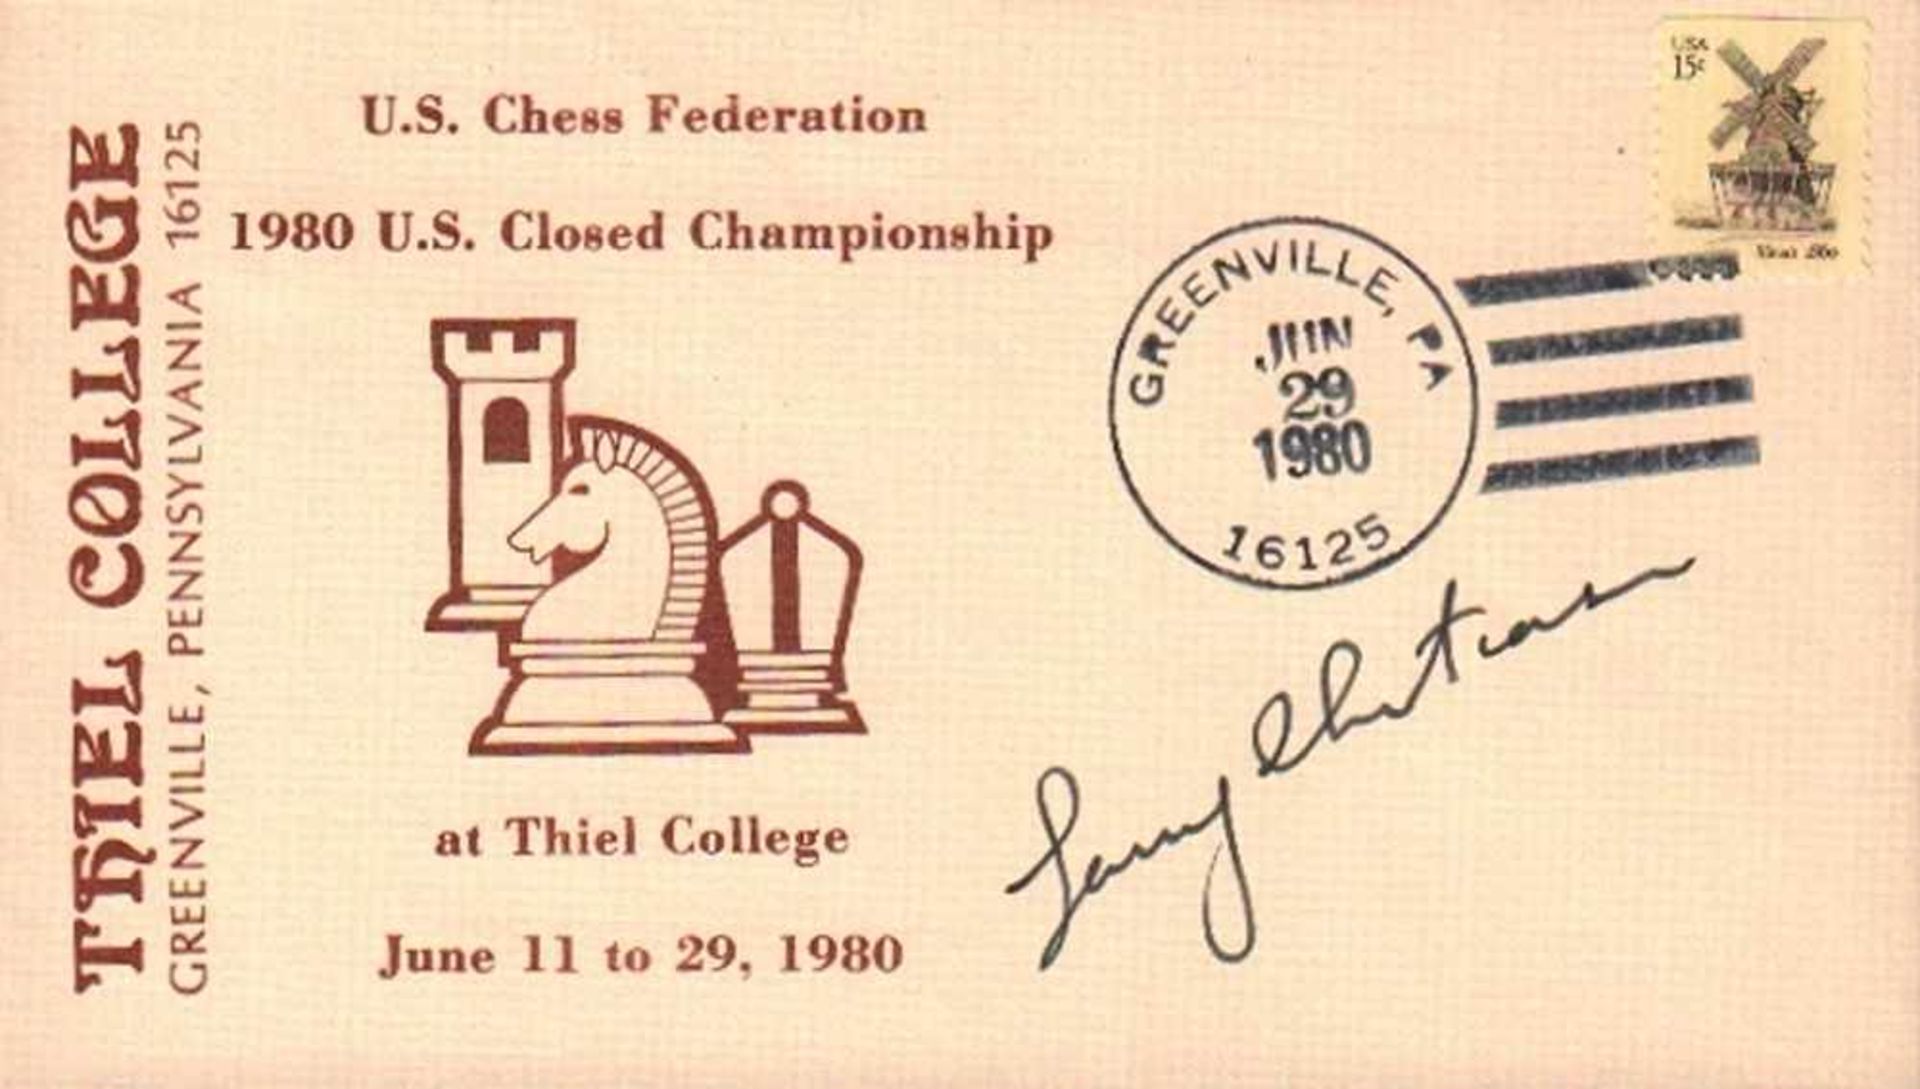 Christiansen, Larry.Briefumschlag mit gedrucktem Schachmotiv zum Turnier in Greenville (